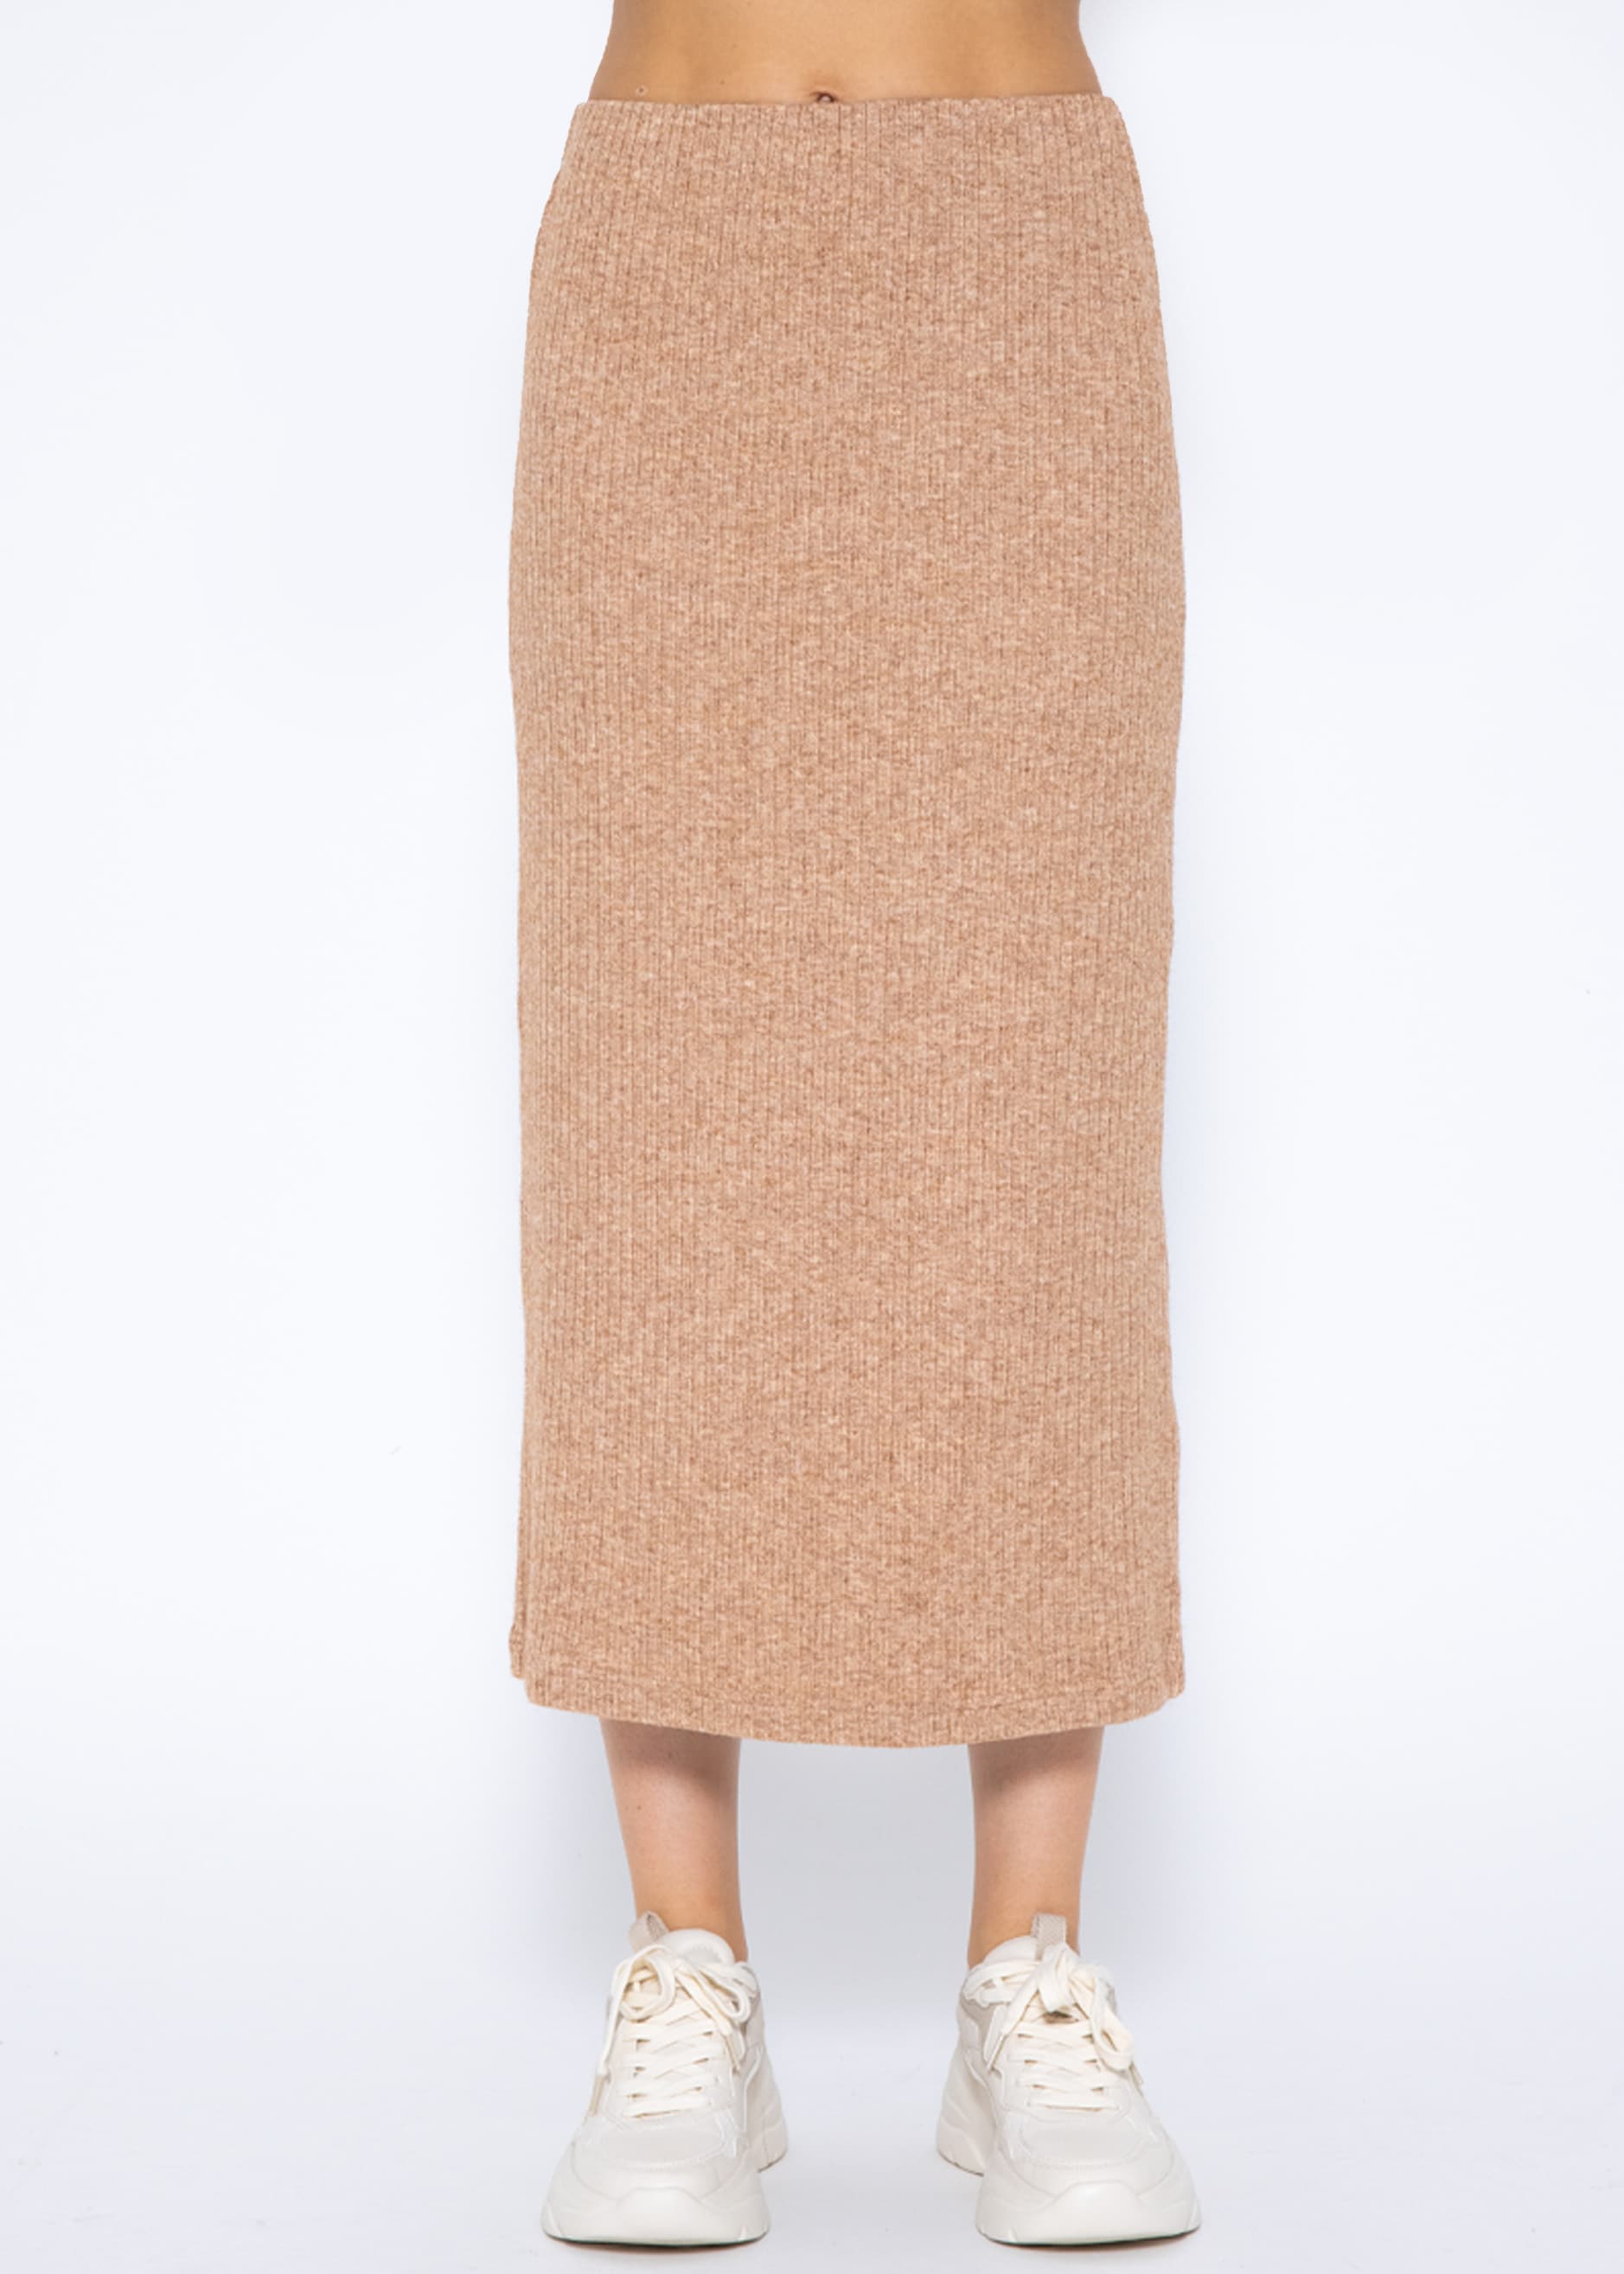 Длинная юбка SASSYCLASSY Maxi (Röcke), серо коричневый